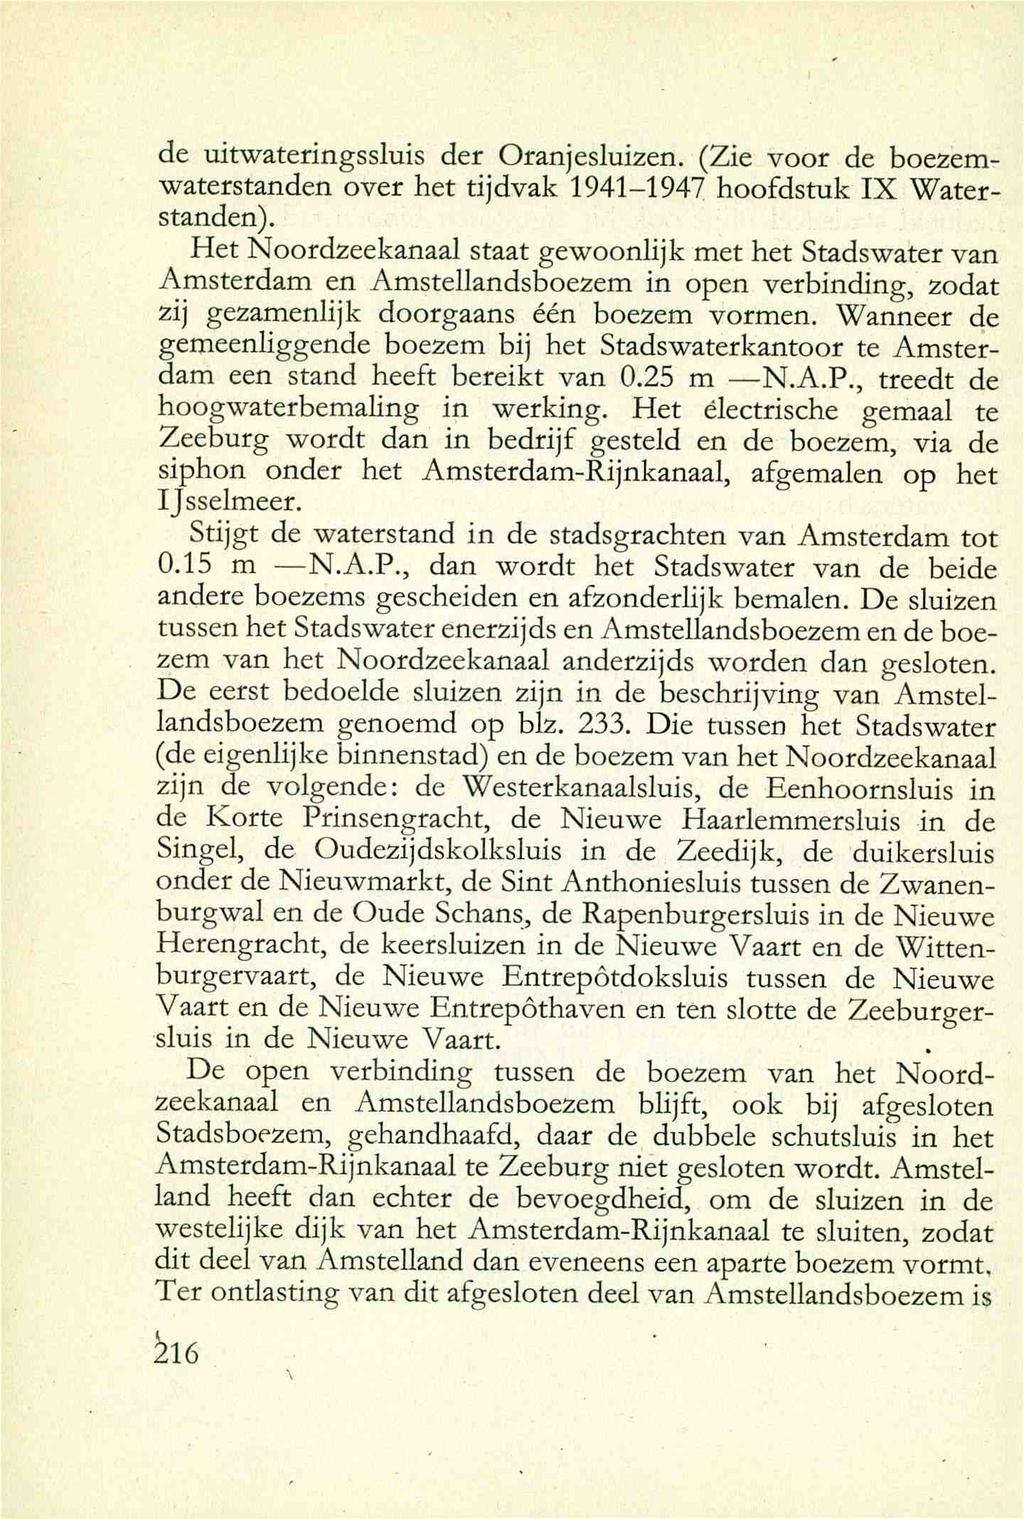 de uitwateringssluis der Oranjeslui2en. (Zie voor de boezemwaterstanden over het tijdvak 1941-1947 hoofdstuk IX Waterstanden).